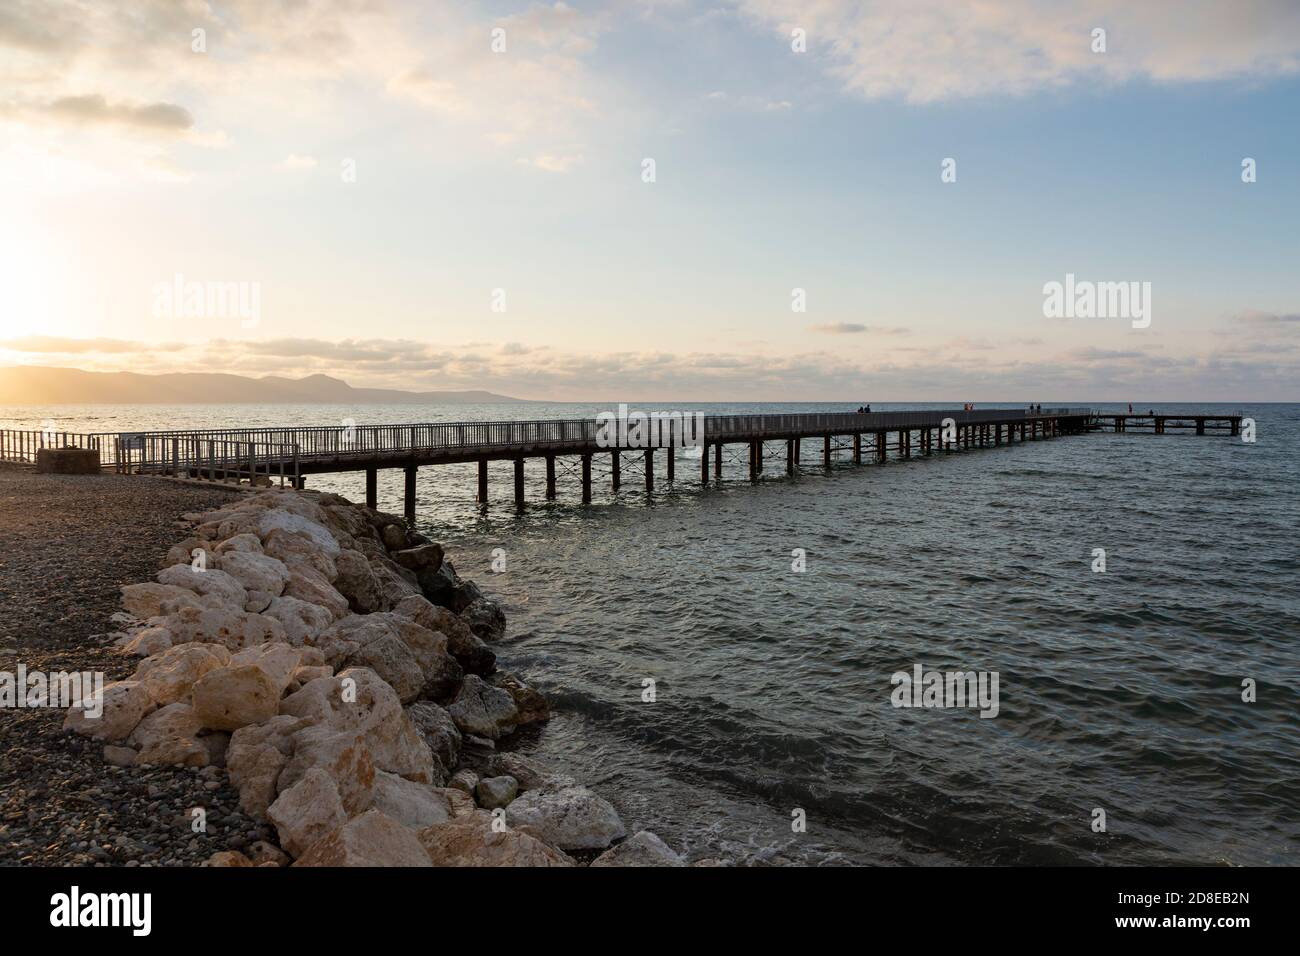 Limni Pier at sunset, Argaka, Paphos District, Cyprus Stock Photo